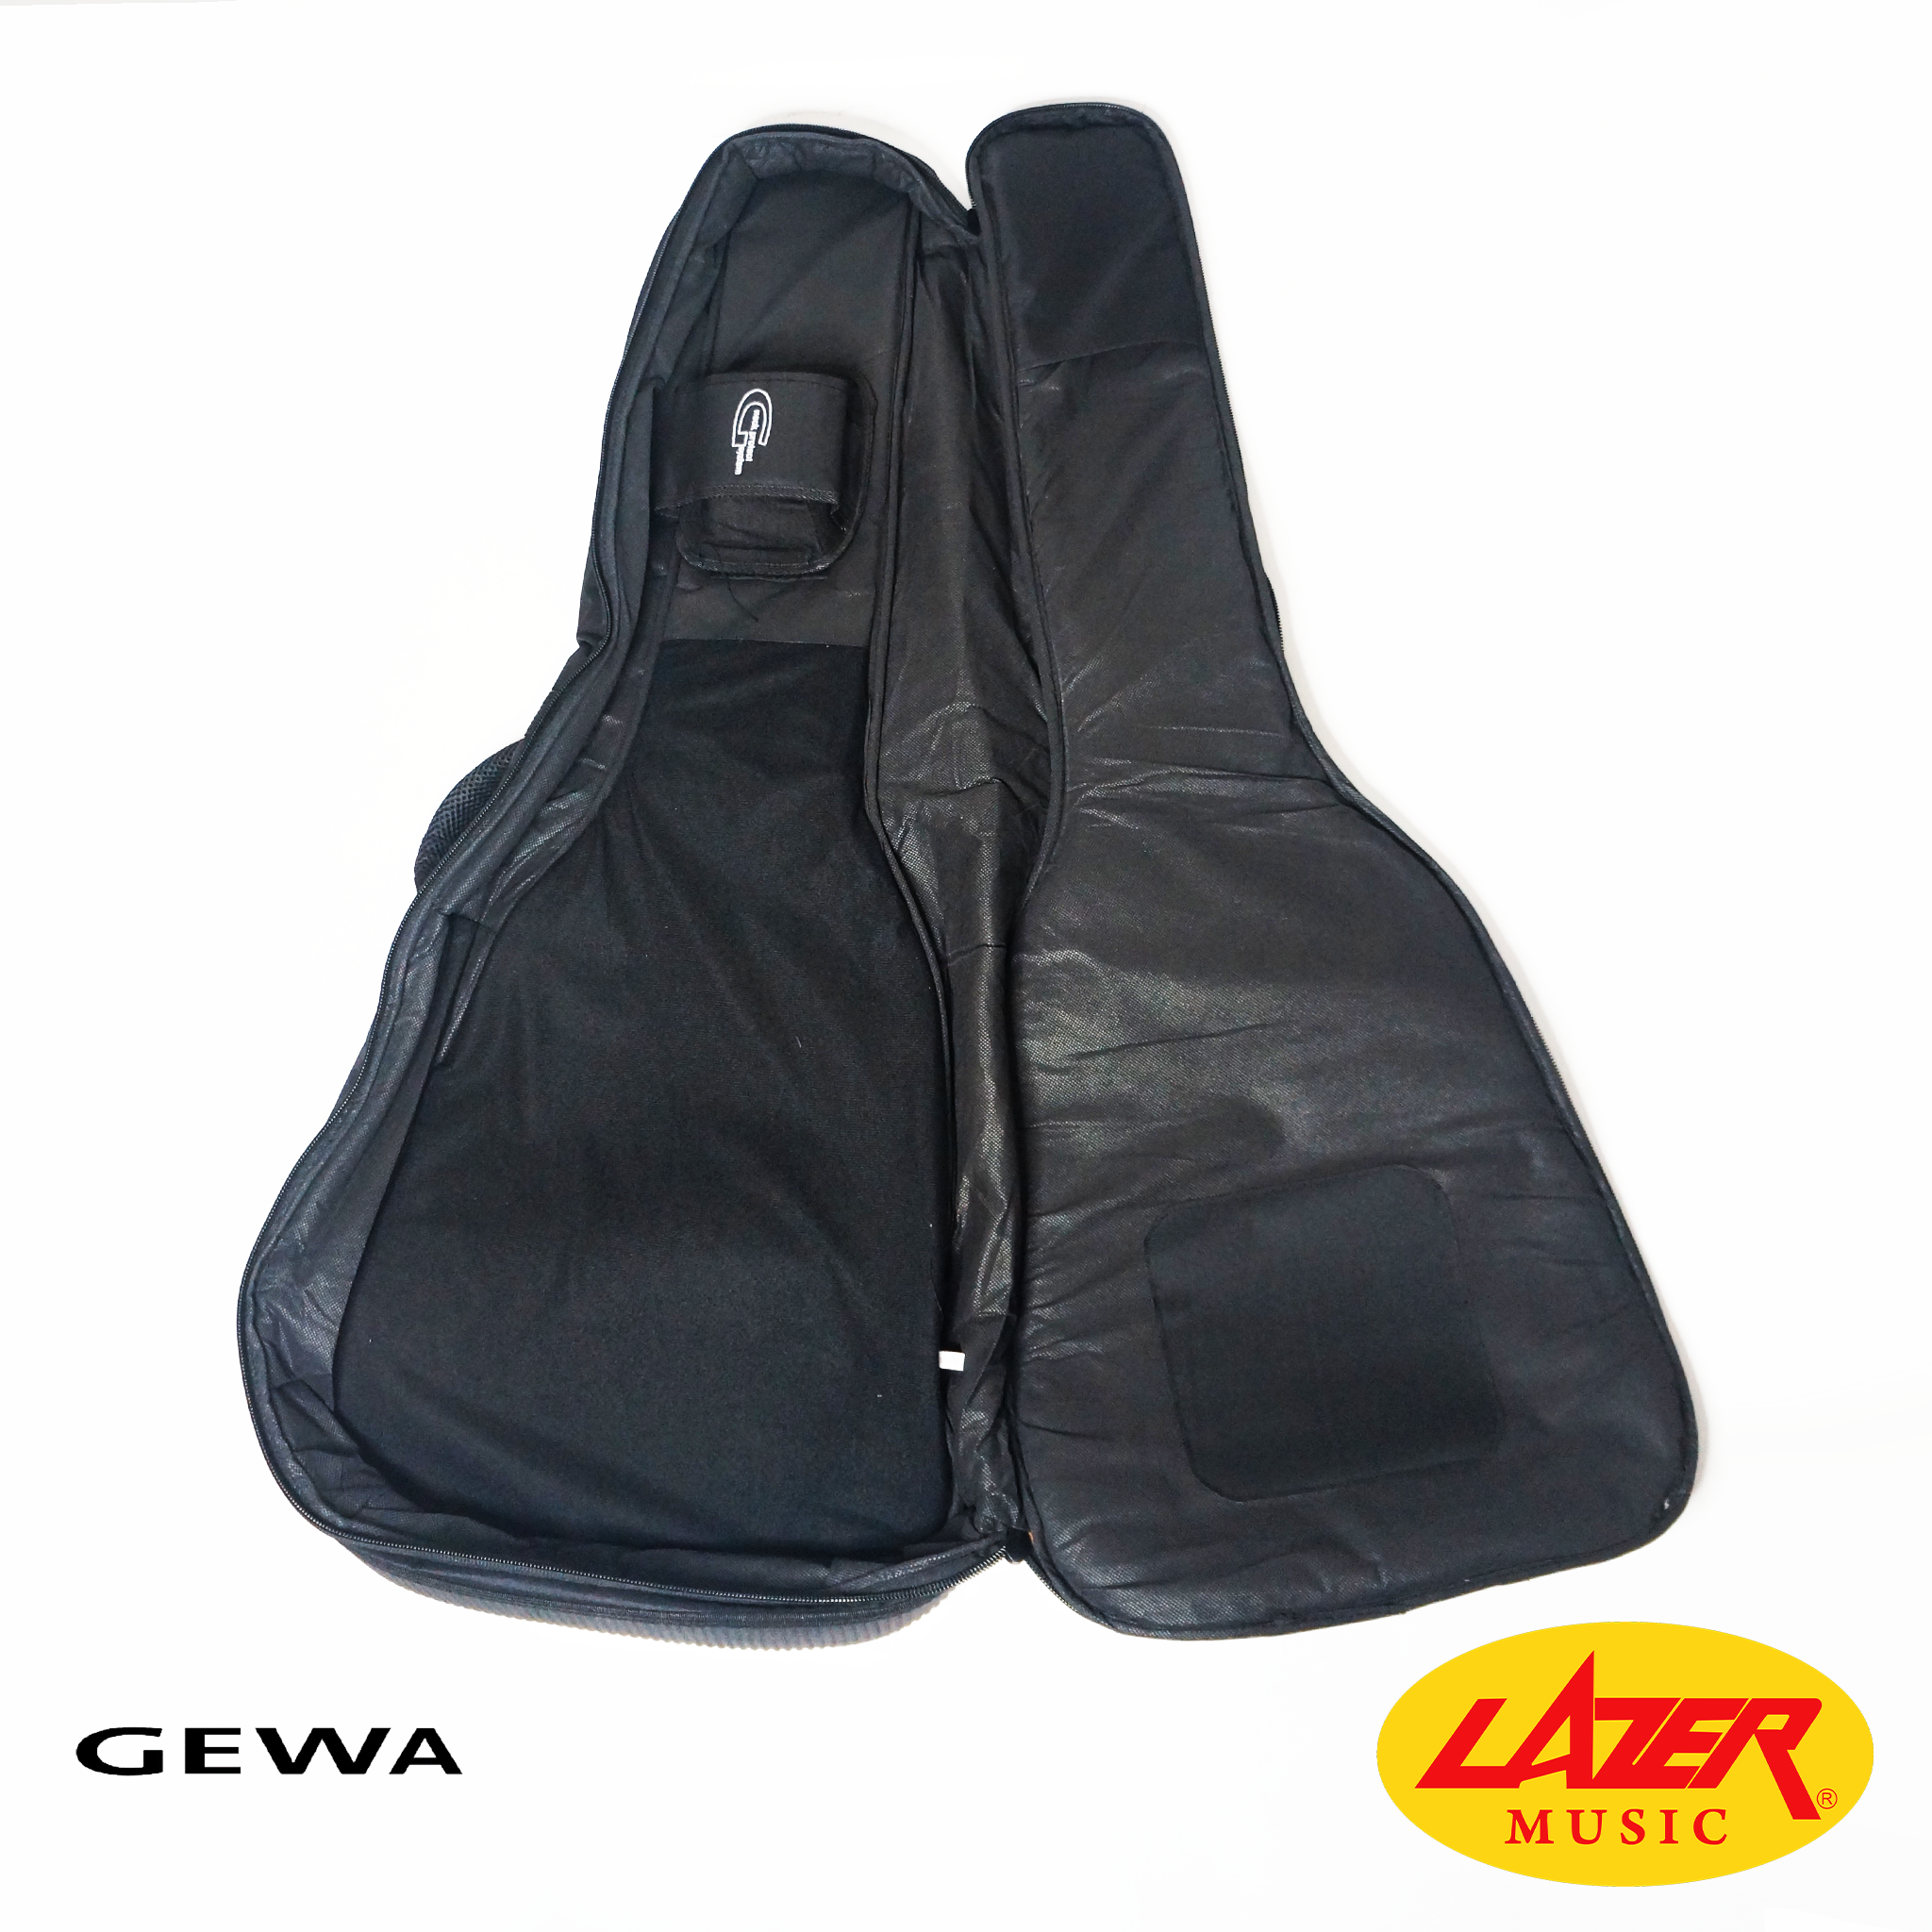 Lazer GEWA-20-W Acoustic Guitar Gig Bag